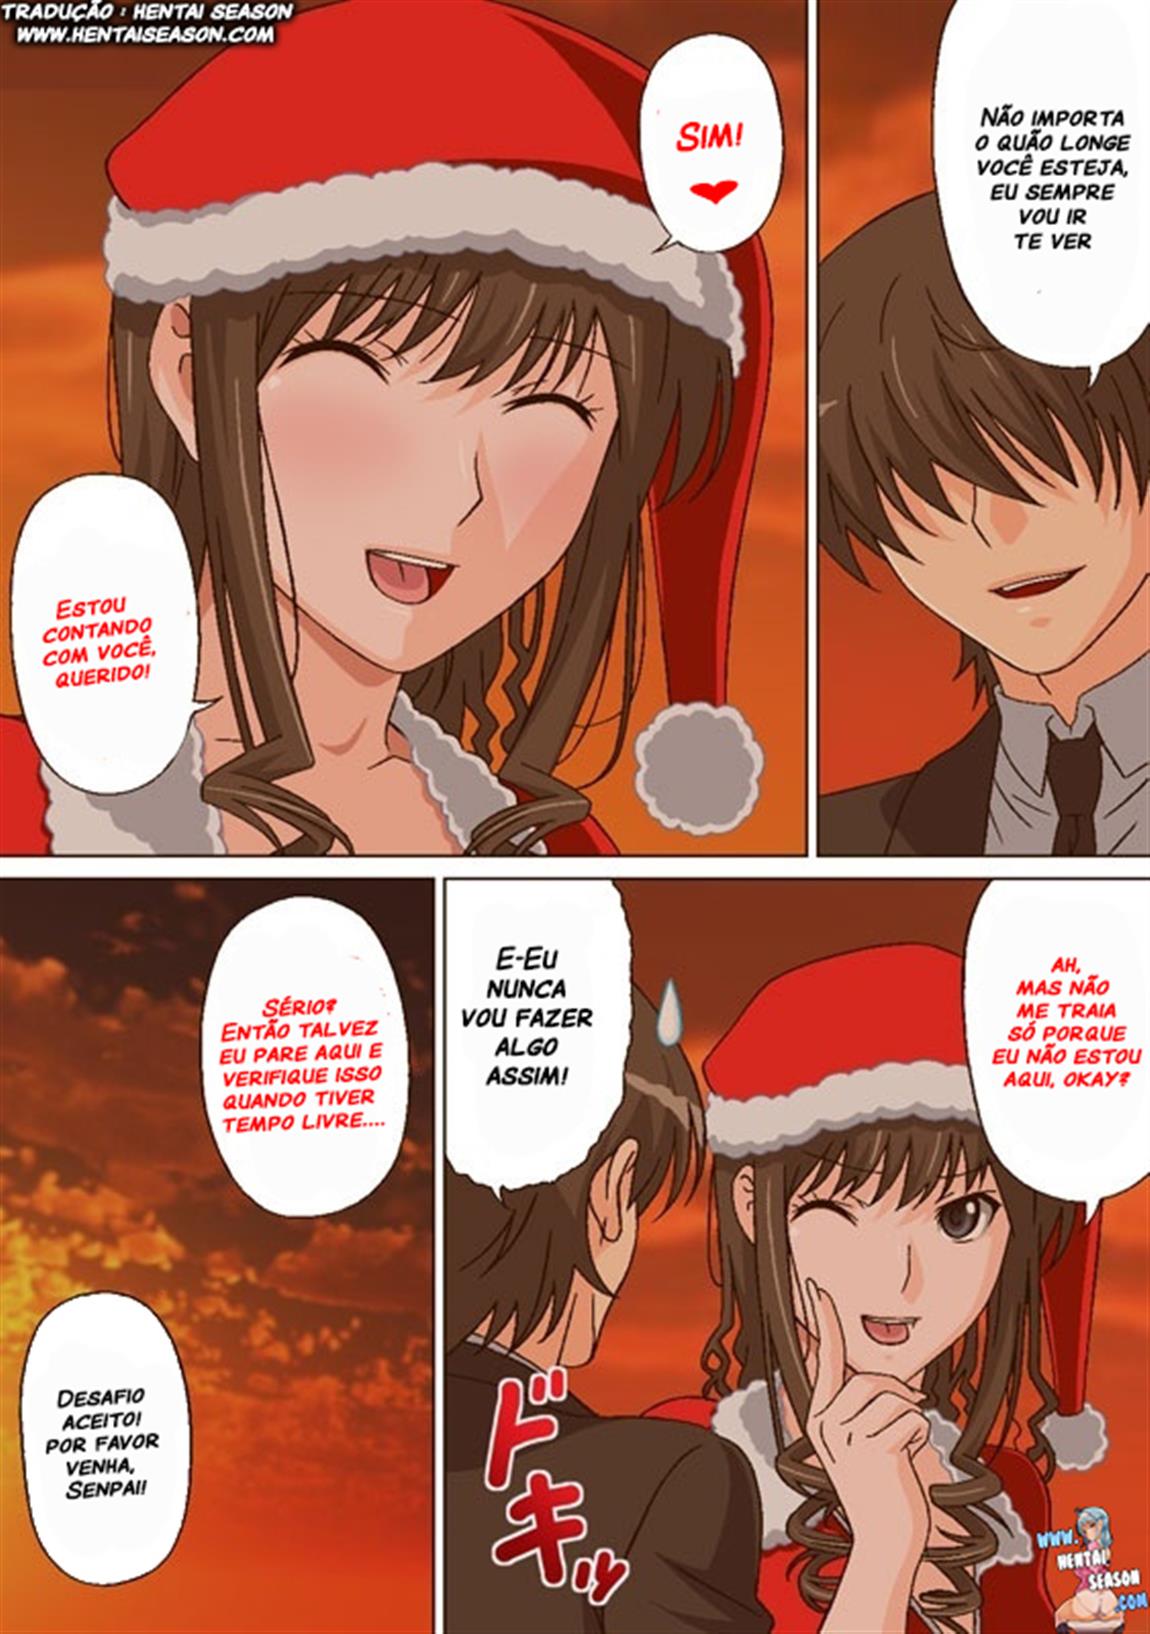 A adorável sedução do Papai Noel